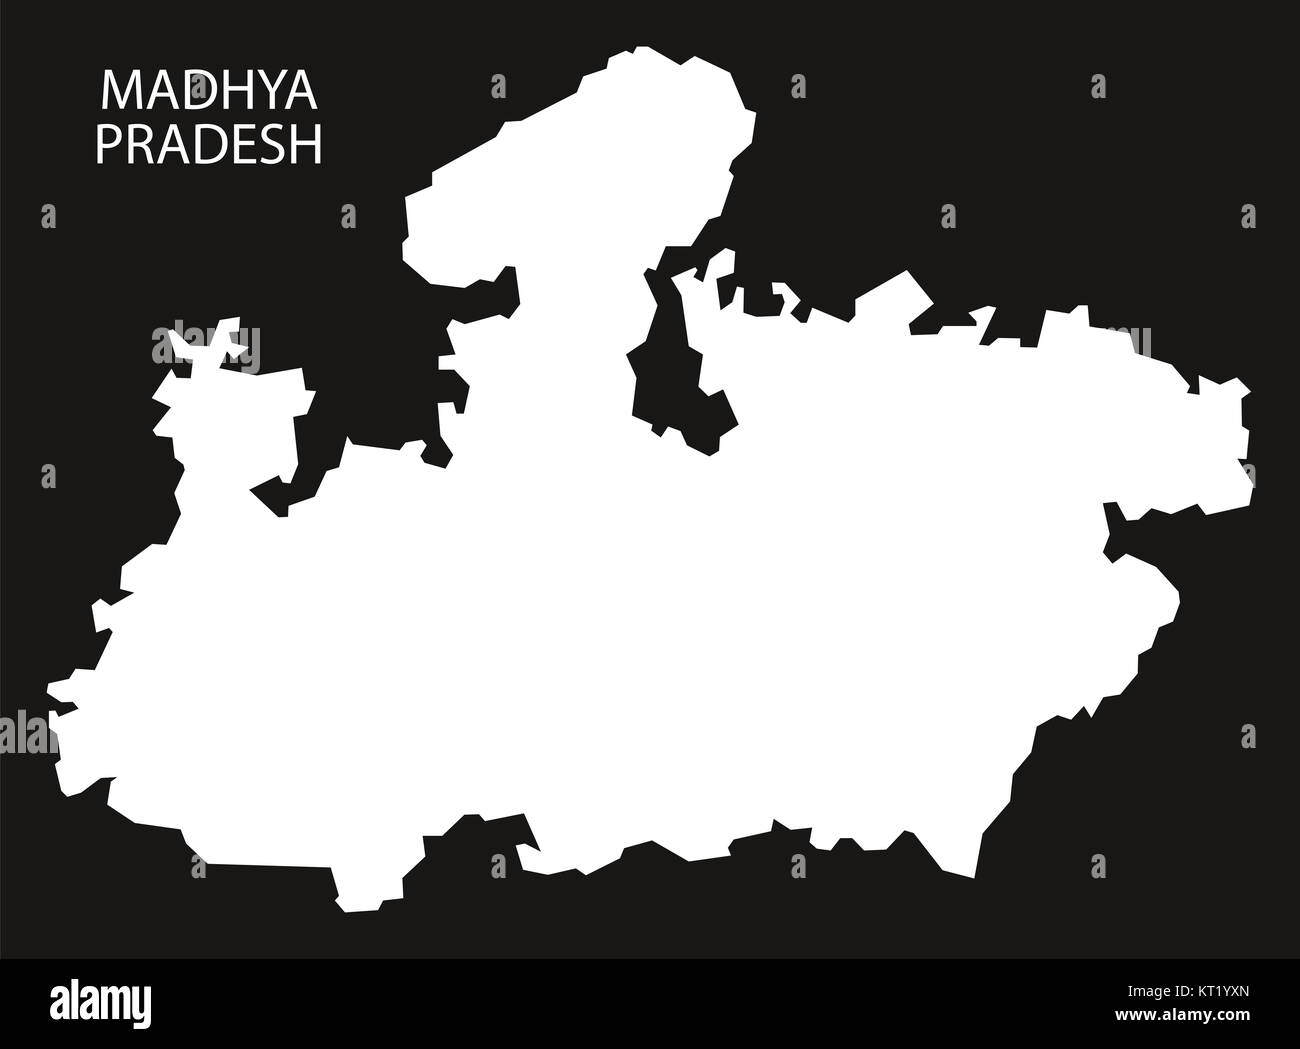 Madhya Pradesh India Map black inverted Stock Photo